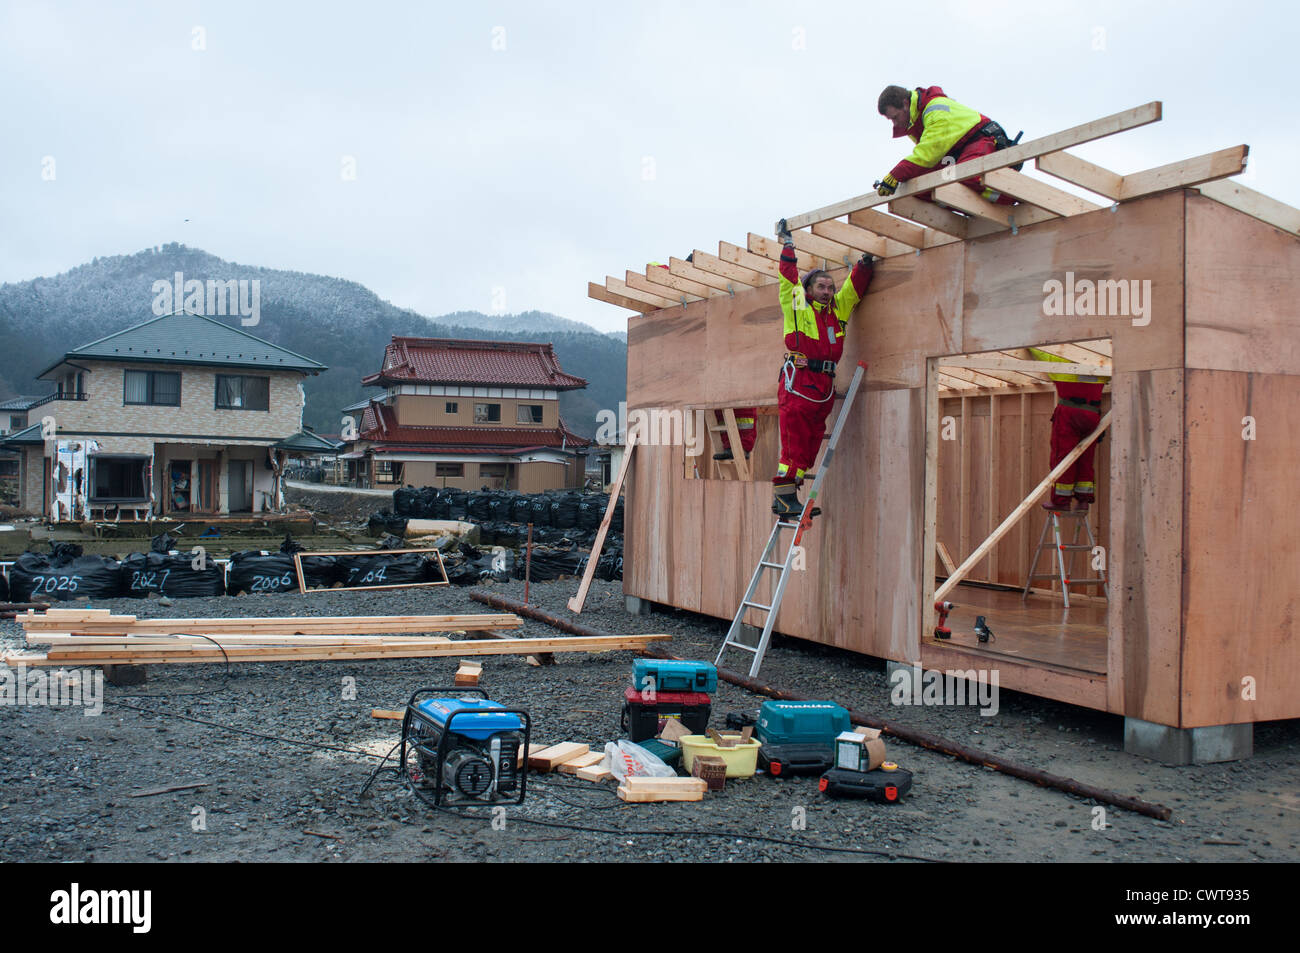 Les travailleurs bénévoles sont la construction d'un "office" pour les pêcheurs locaux dans Onosaki, Ishinomaki, un village qui a été complètement détruit. Banque D'Images